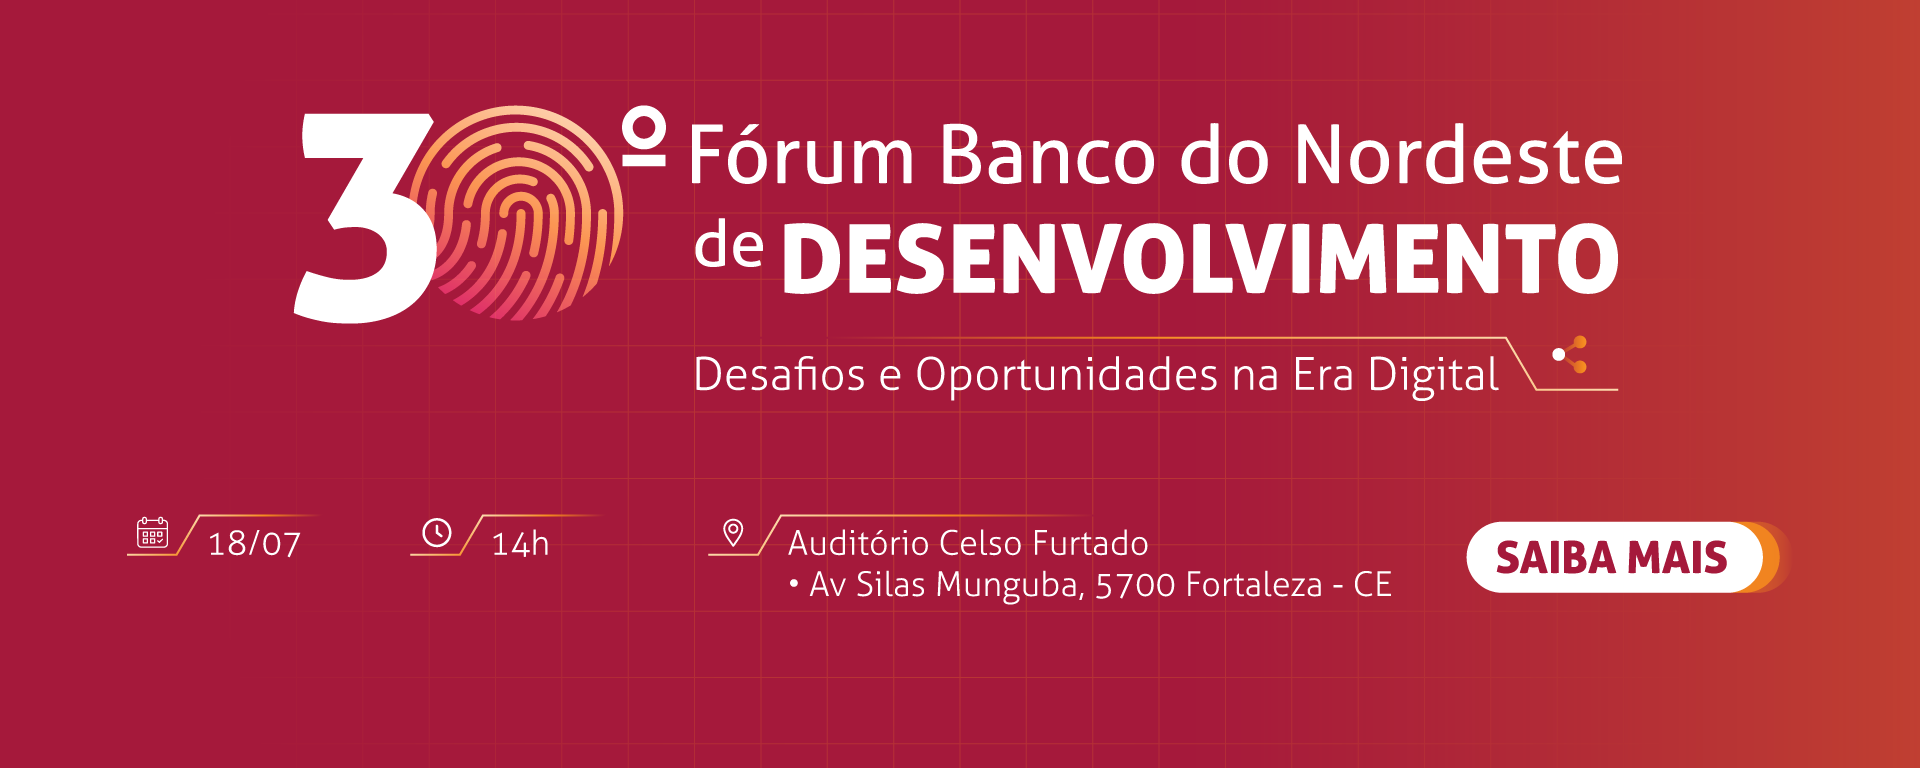 30º fórum de desenvolvimento do BNB. Desafios e oportunidades na era digital. 18/07 às 14h. Saiba mais.